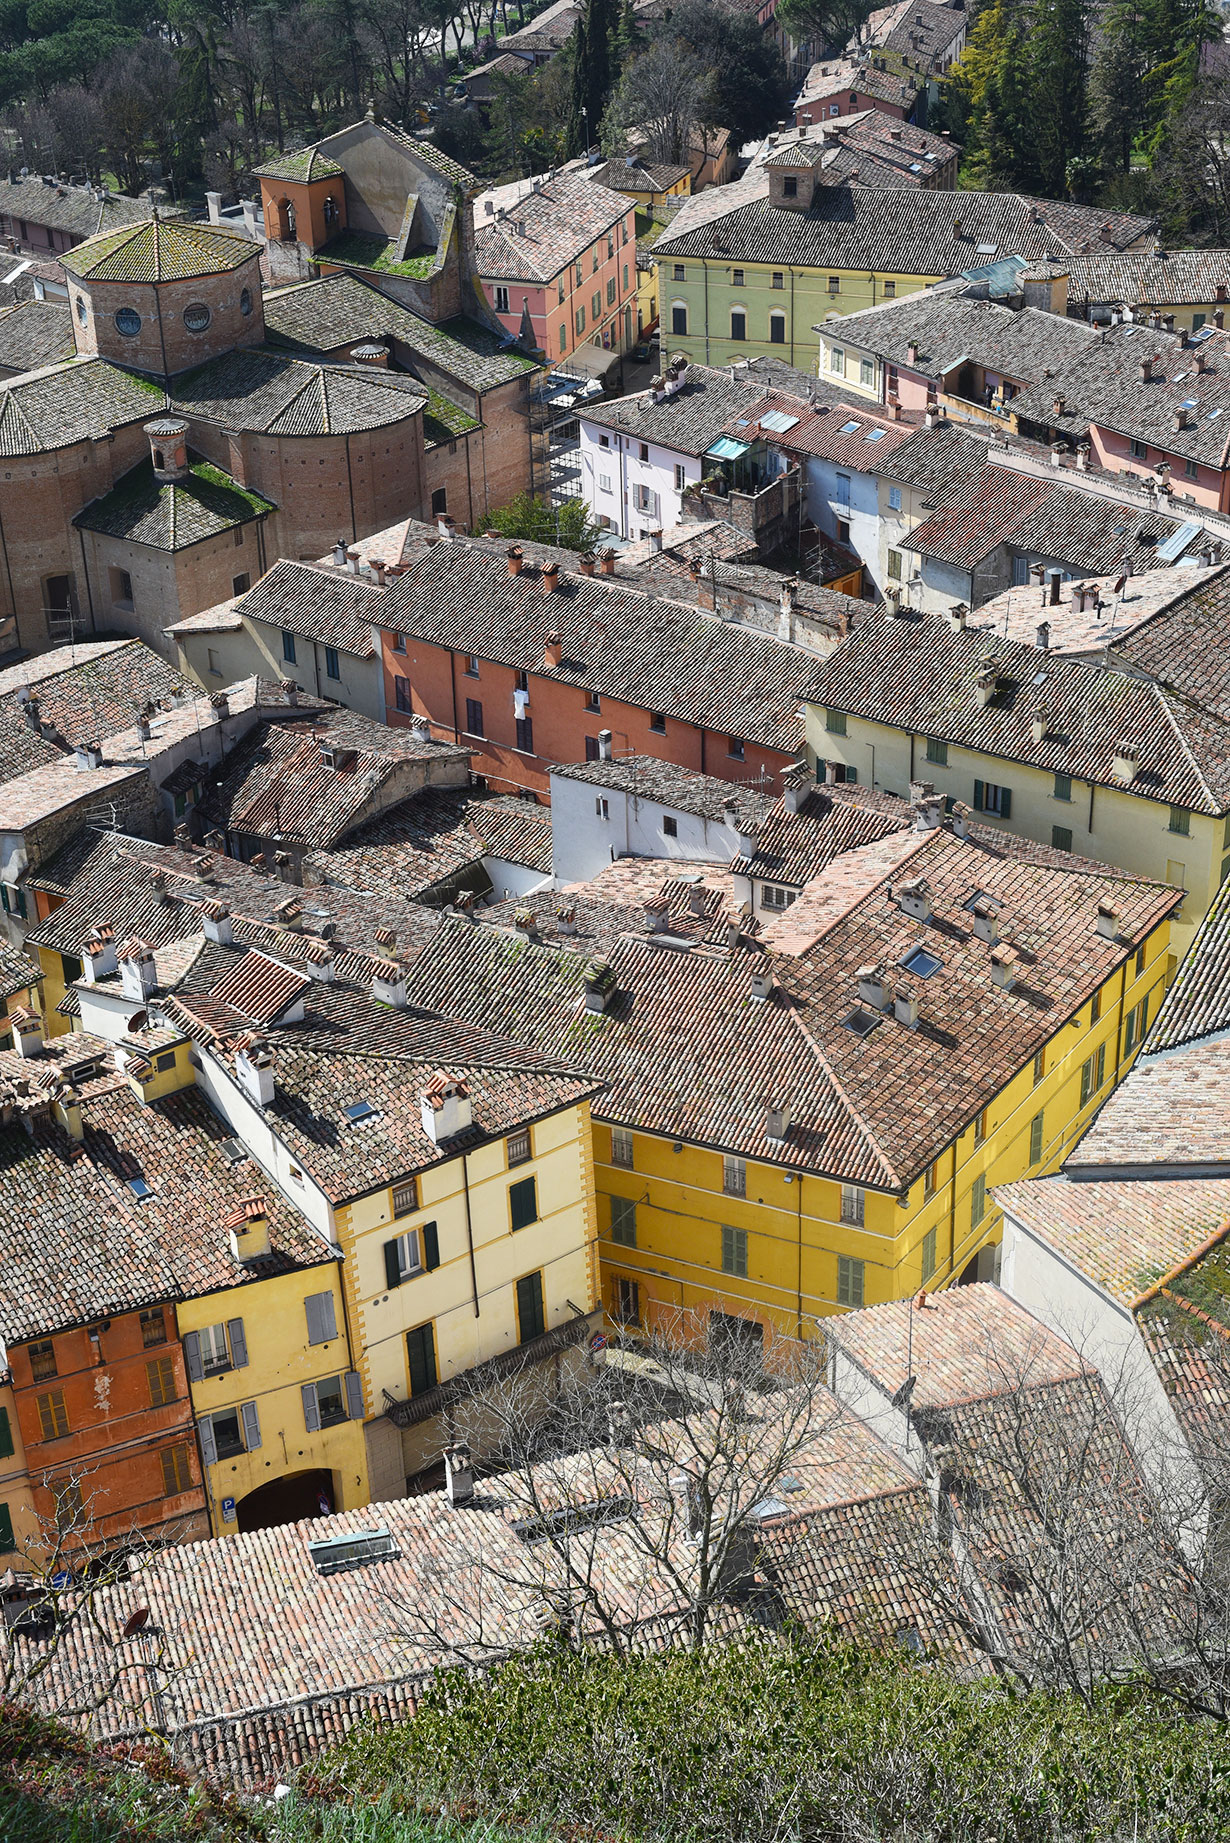 The colorful houses of Brisighella, Emilia Romagna